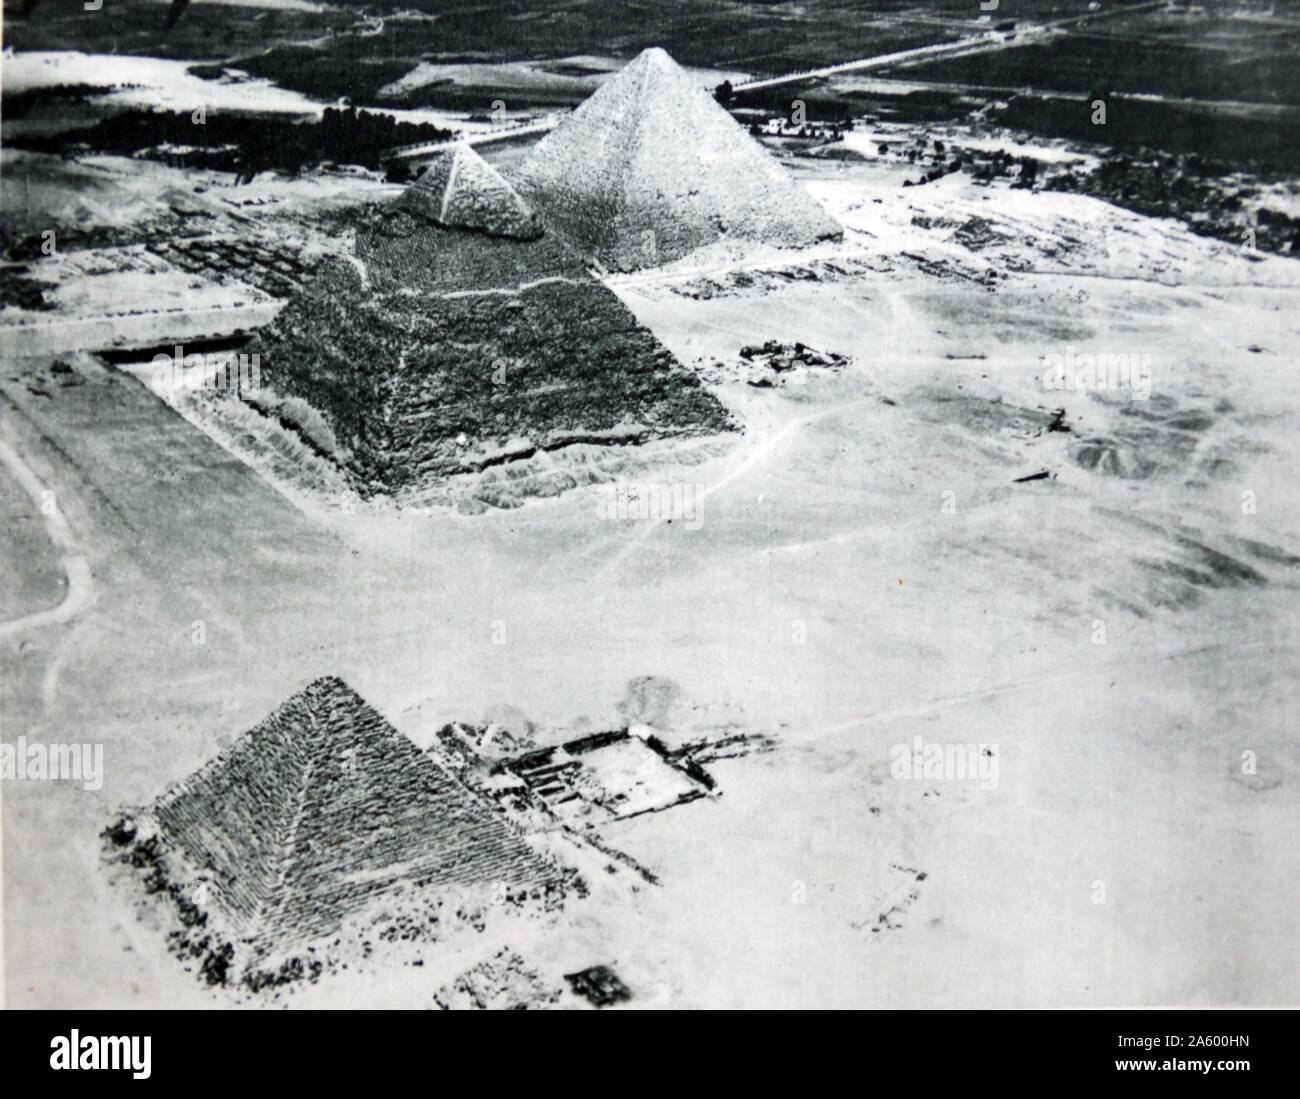 Fotografia delle piramidi egiziane nel 1928 da Sir Alan John Cobham, 1894 - 1973. Egli era un inglese un pioniere dell'aviazione Foto Stock